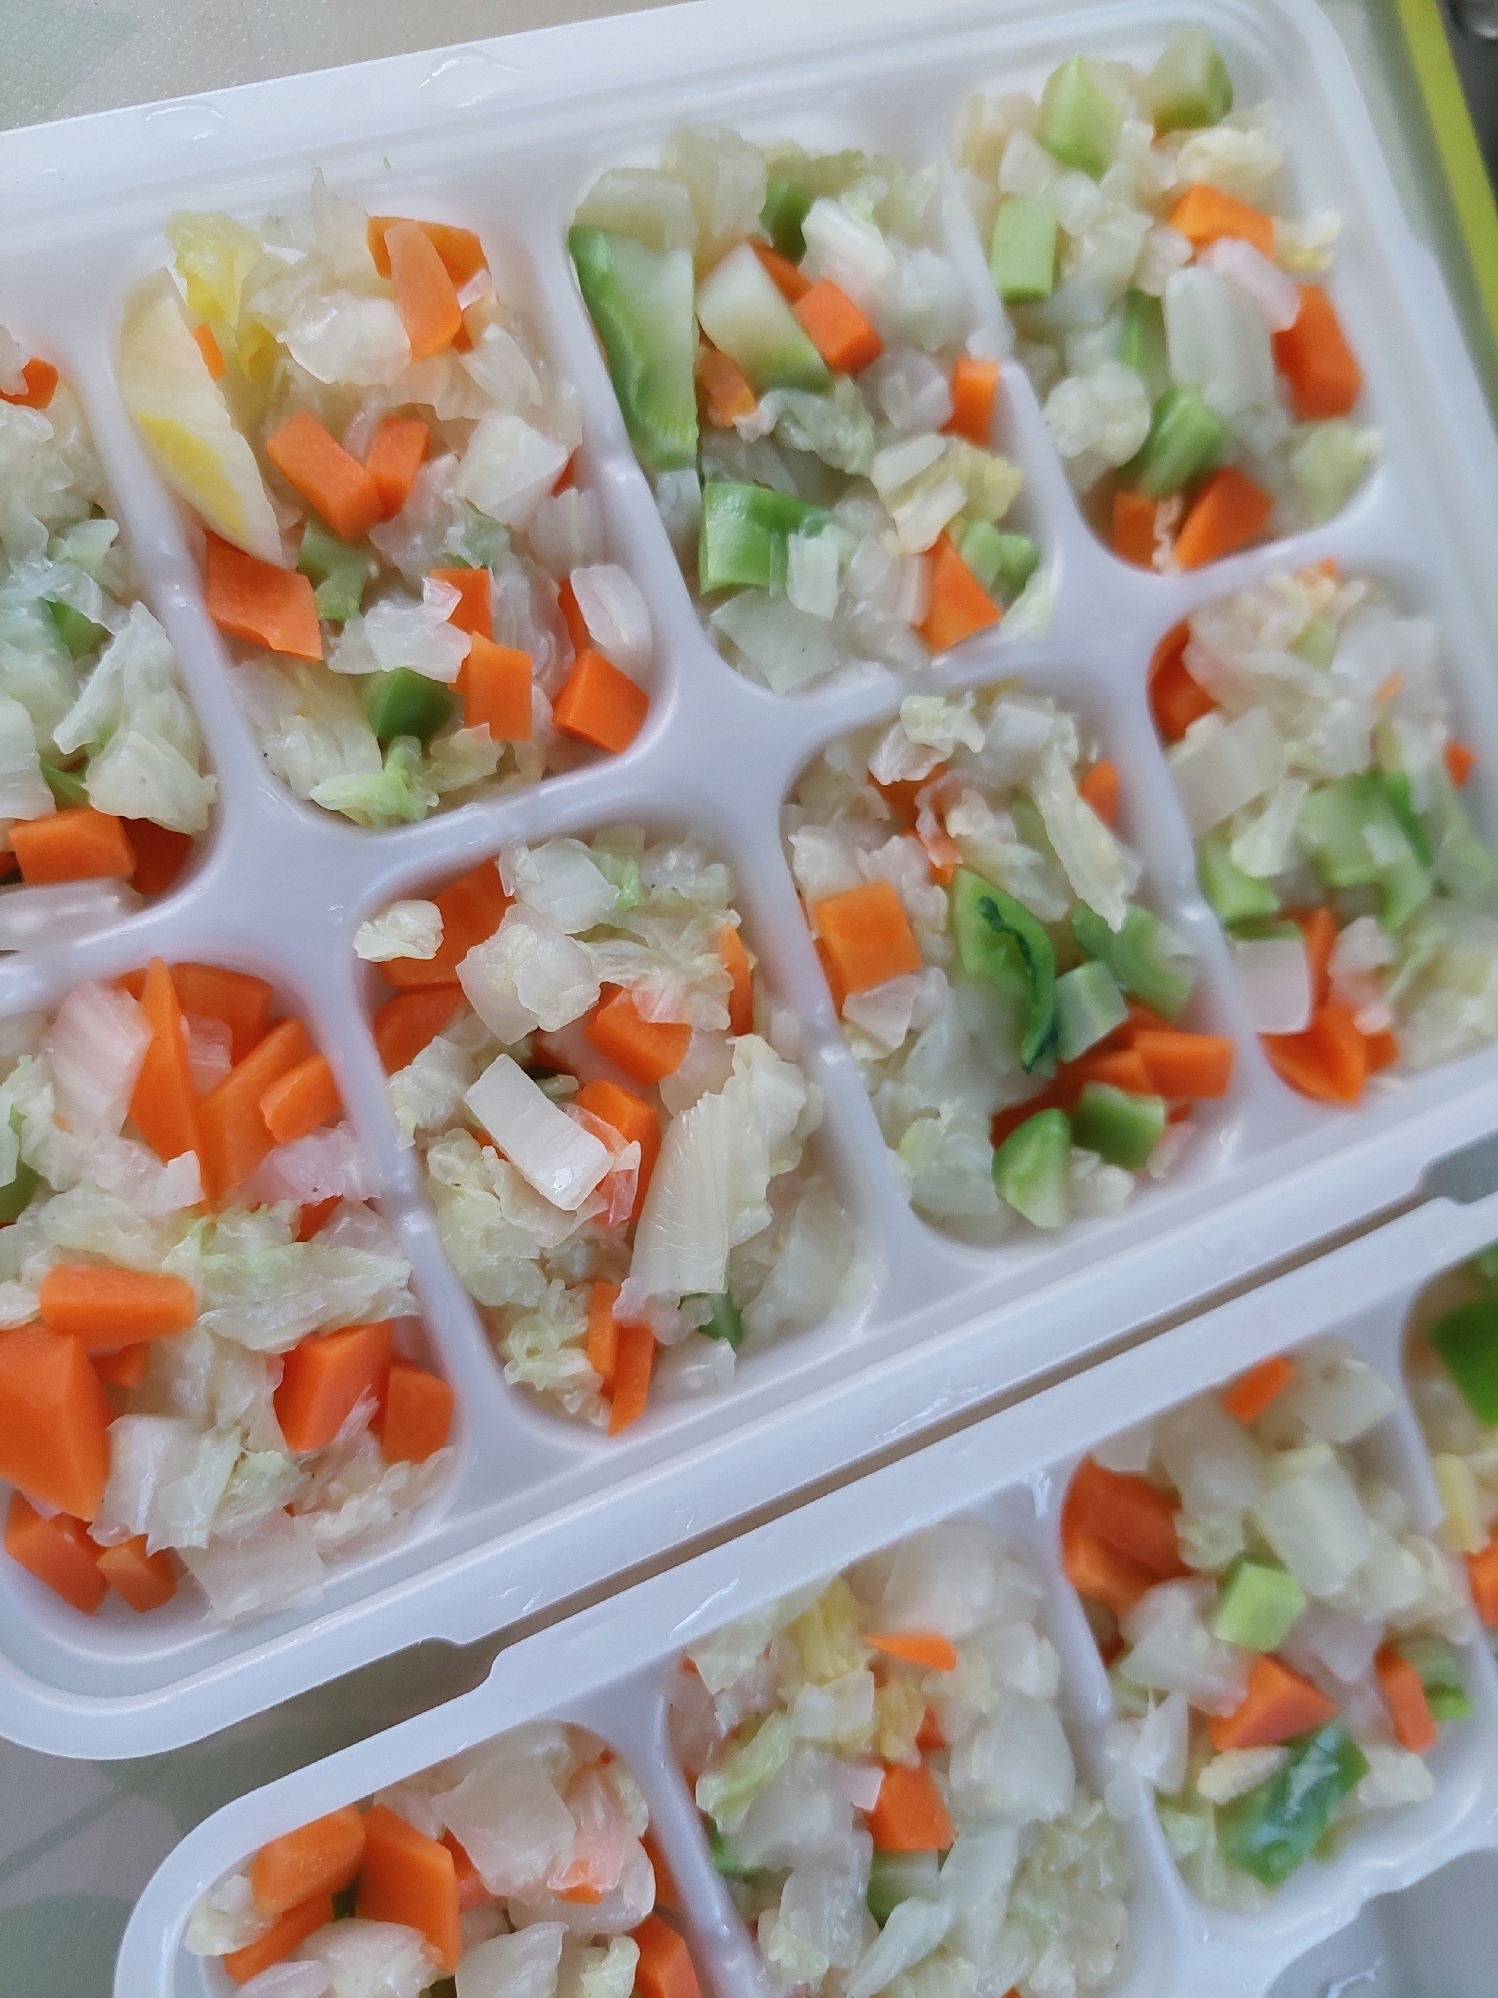 ミックス野菜の冷凍保存方法